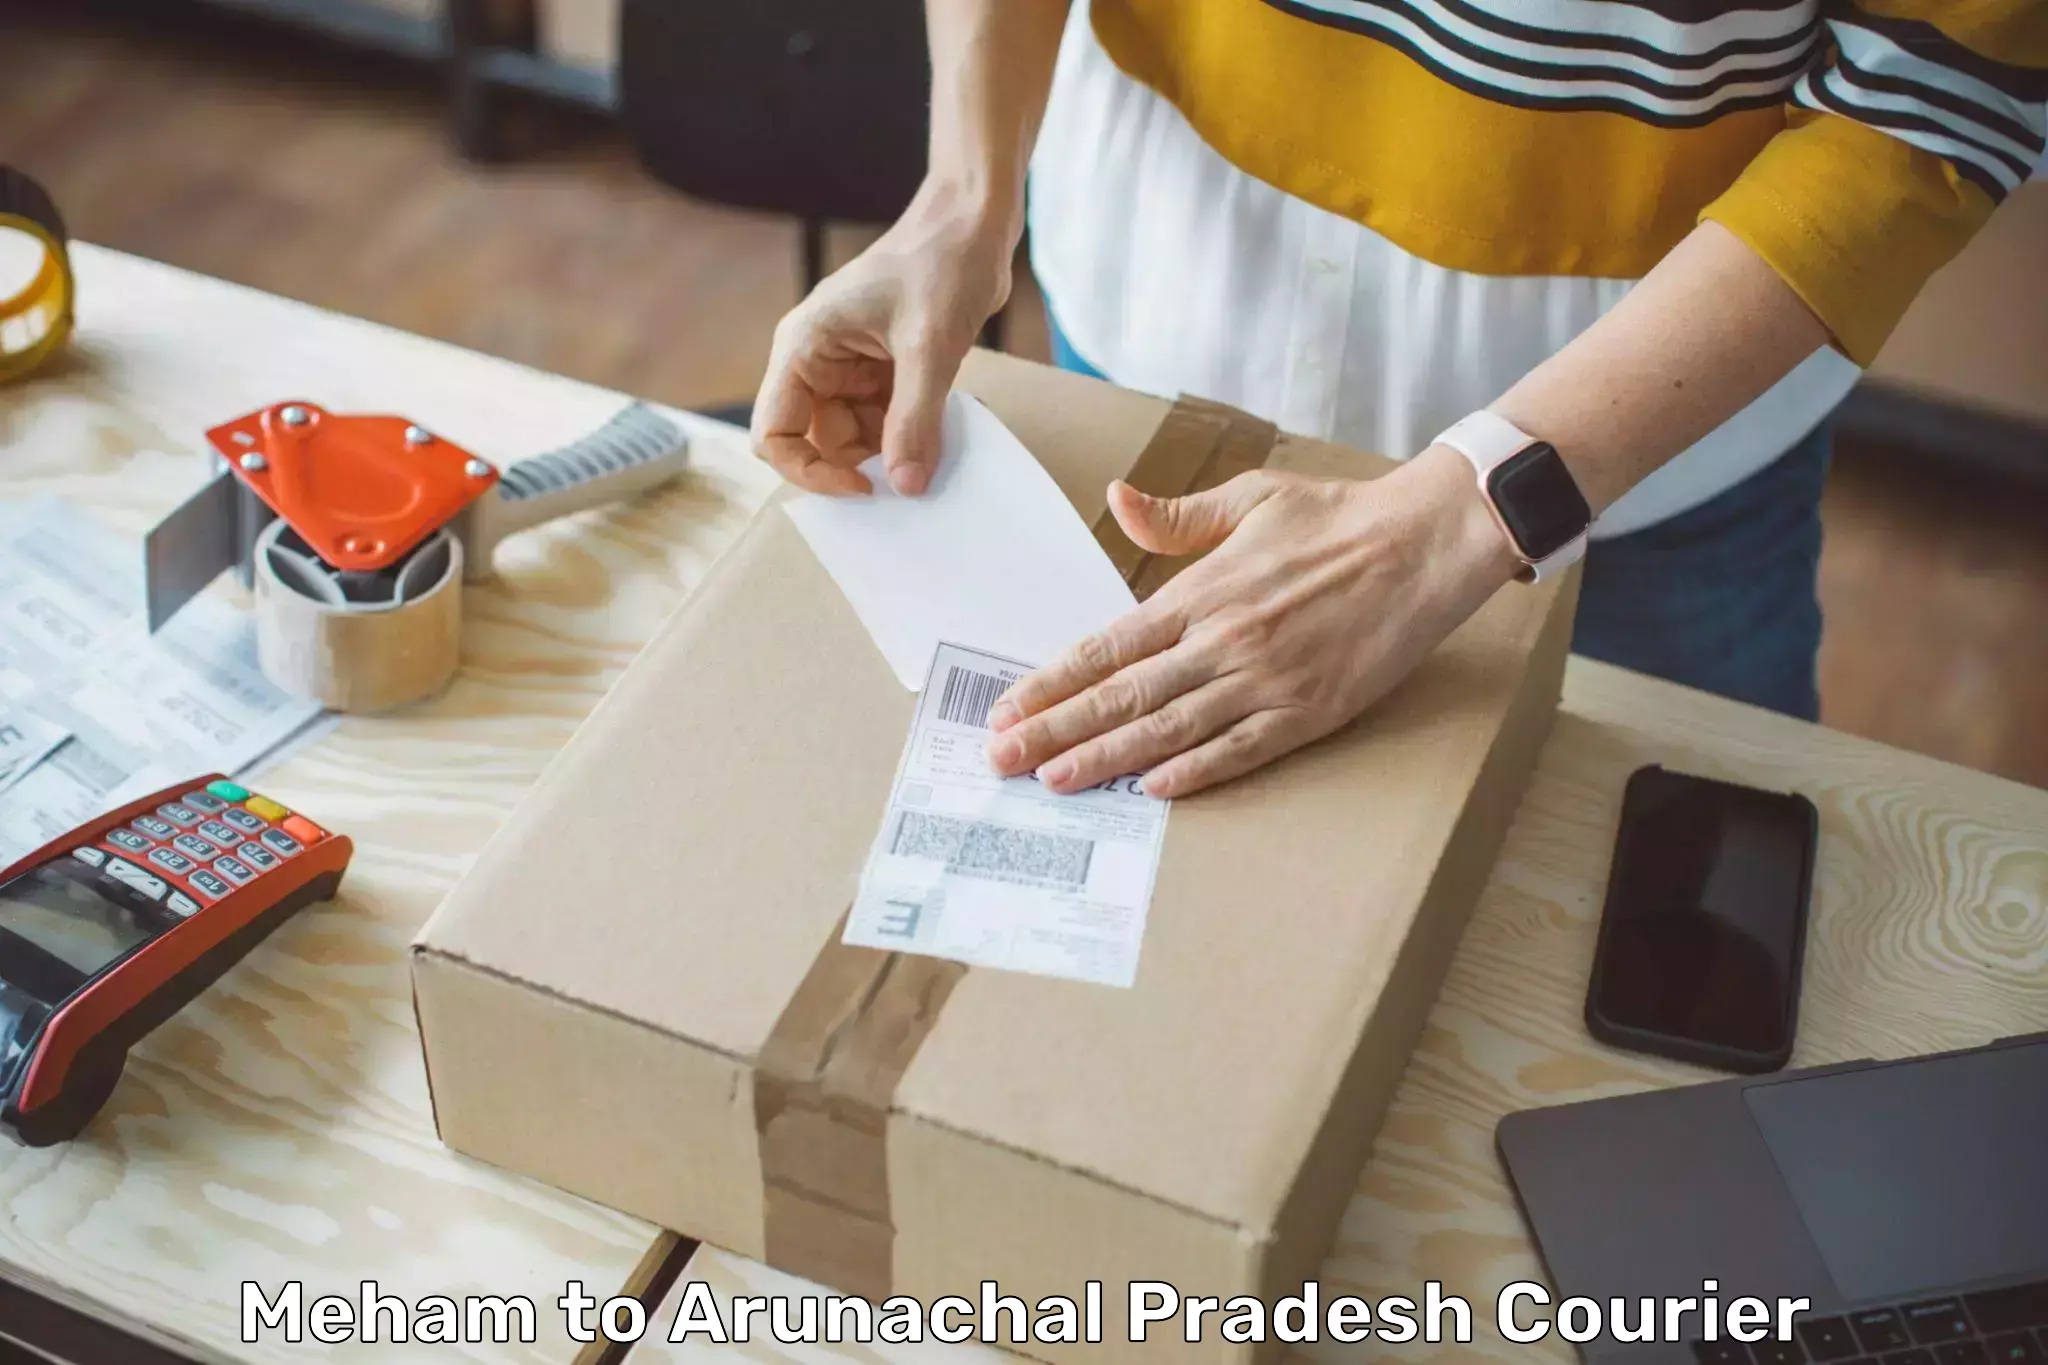 24-hour courier service Meham to Arunachal Pradesh